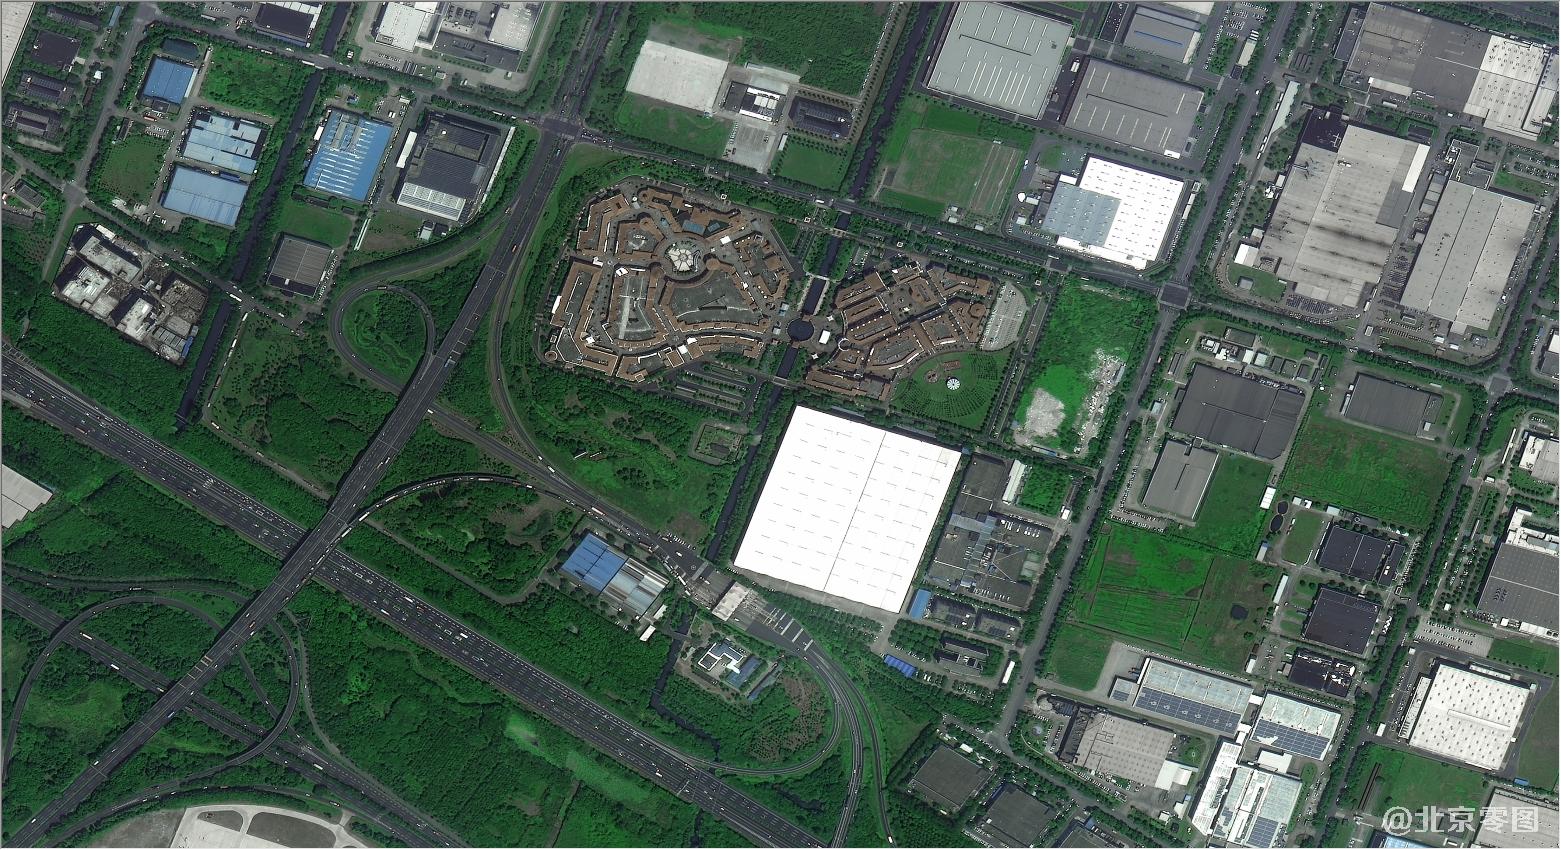 0.5-meter satellite image taken by SuperView Satellite 